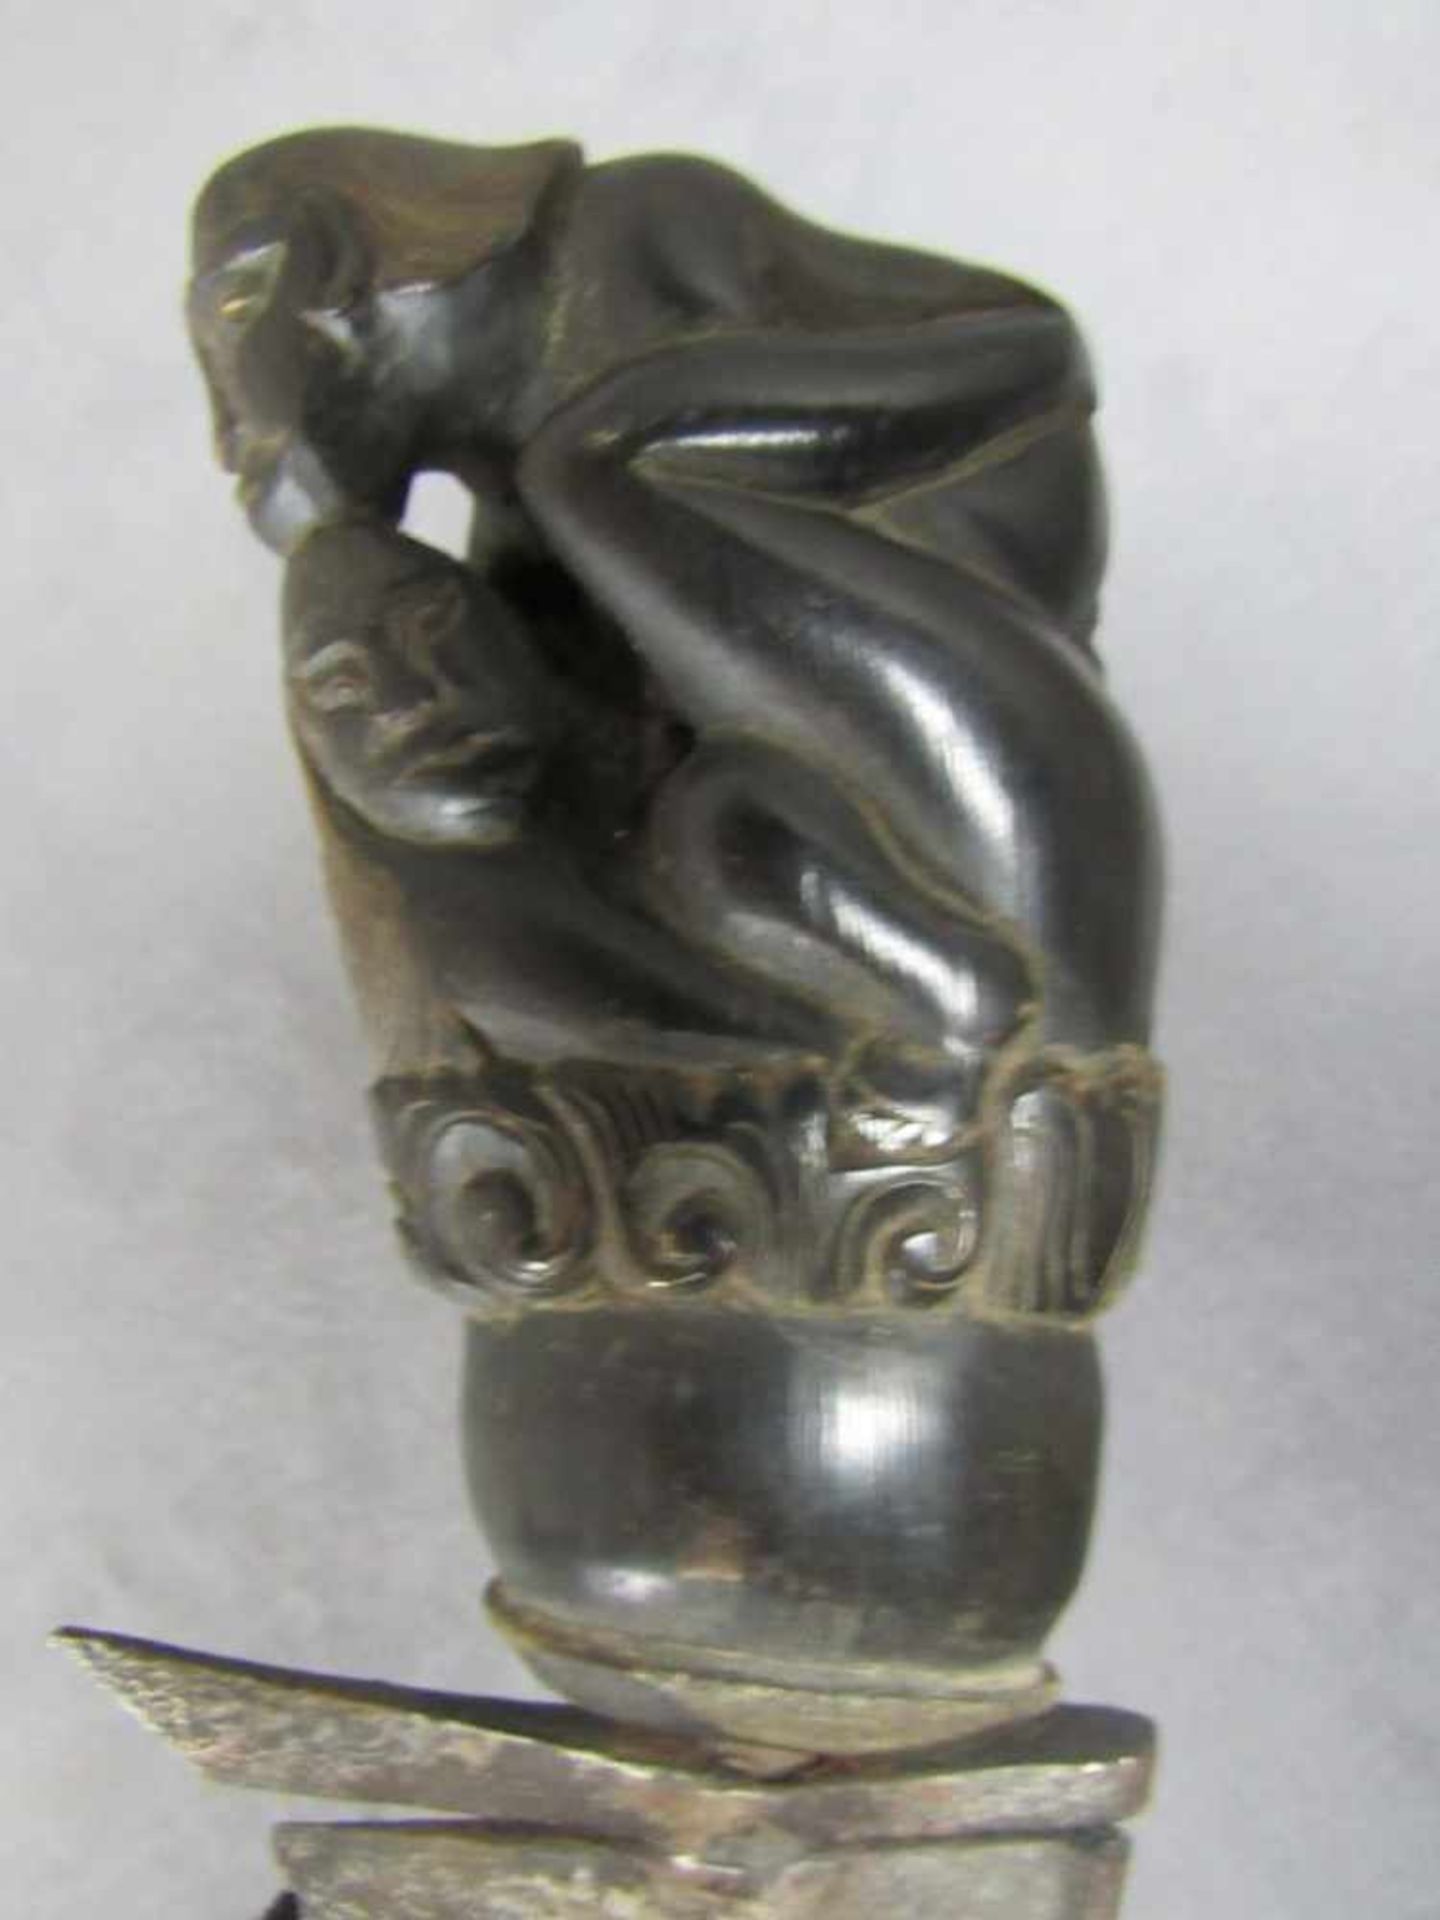 Asiatischer Dolch Griff in Horn Paar im Liebesakt erotika um 1800 Damastklinge diese stark - Image 2 of 2